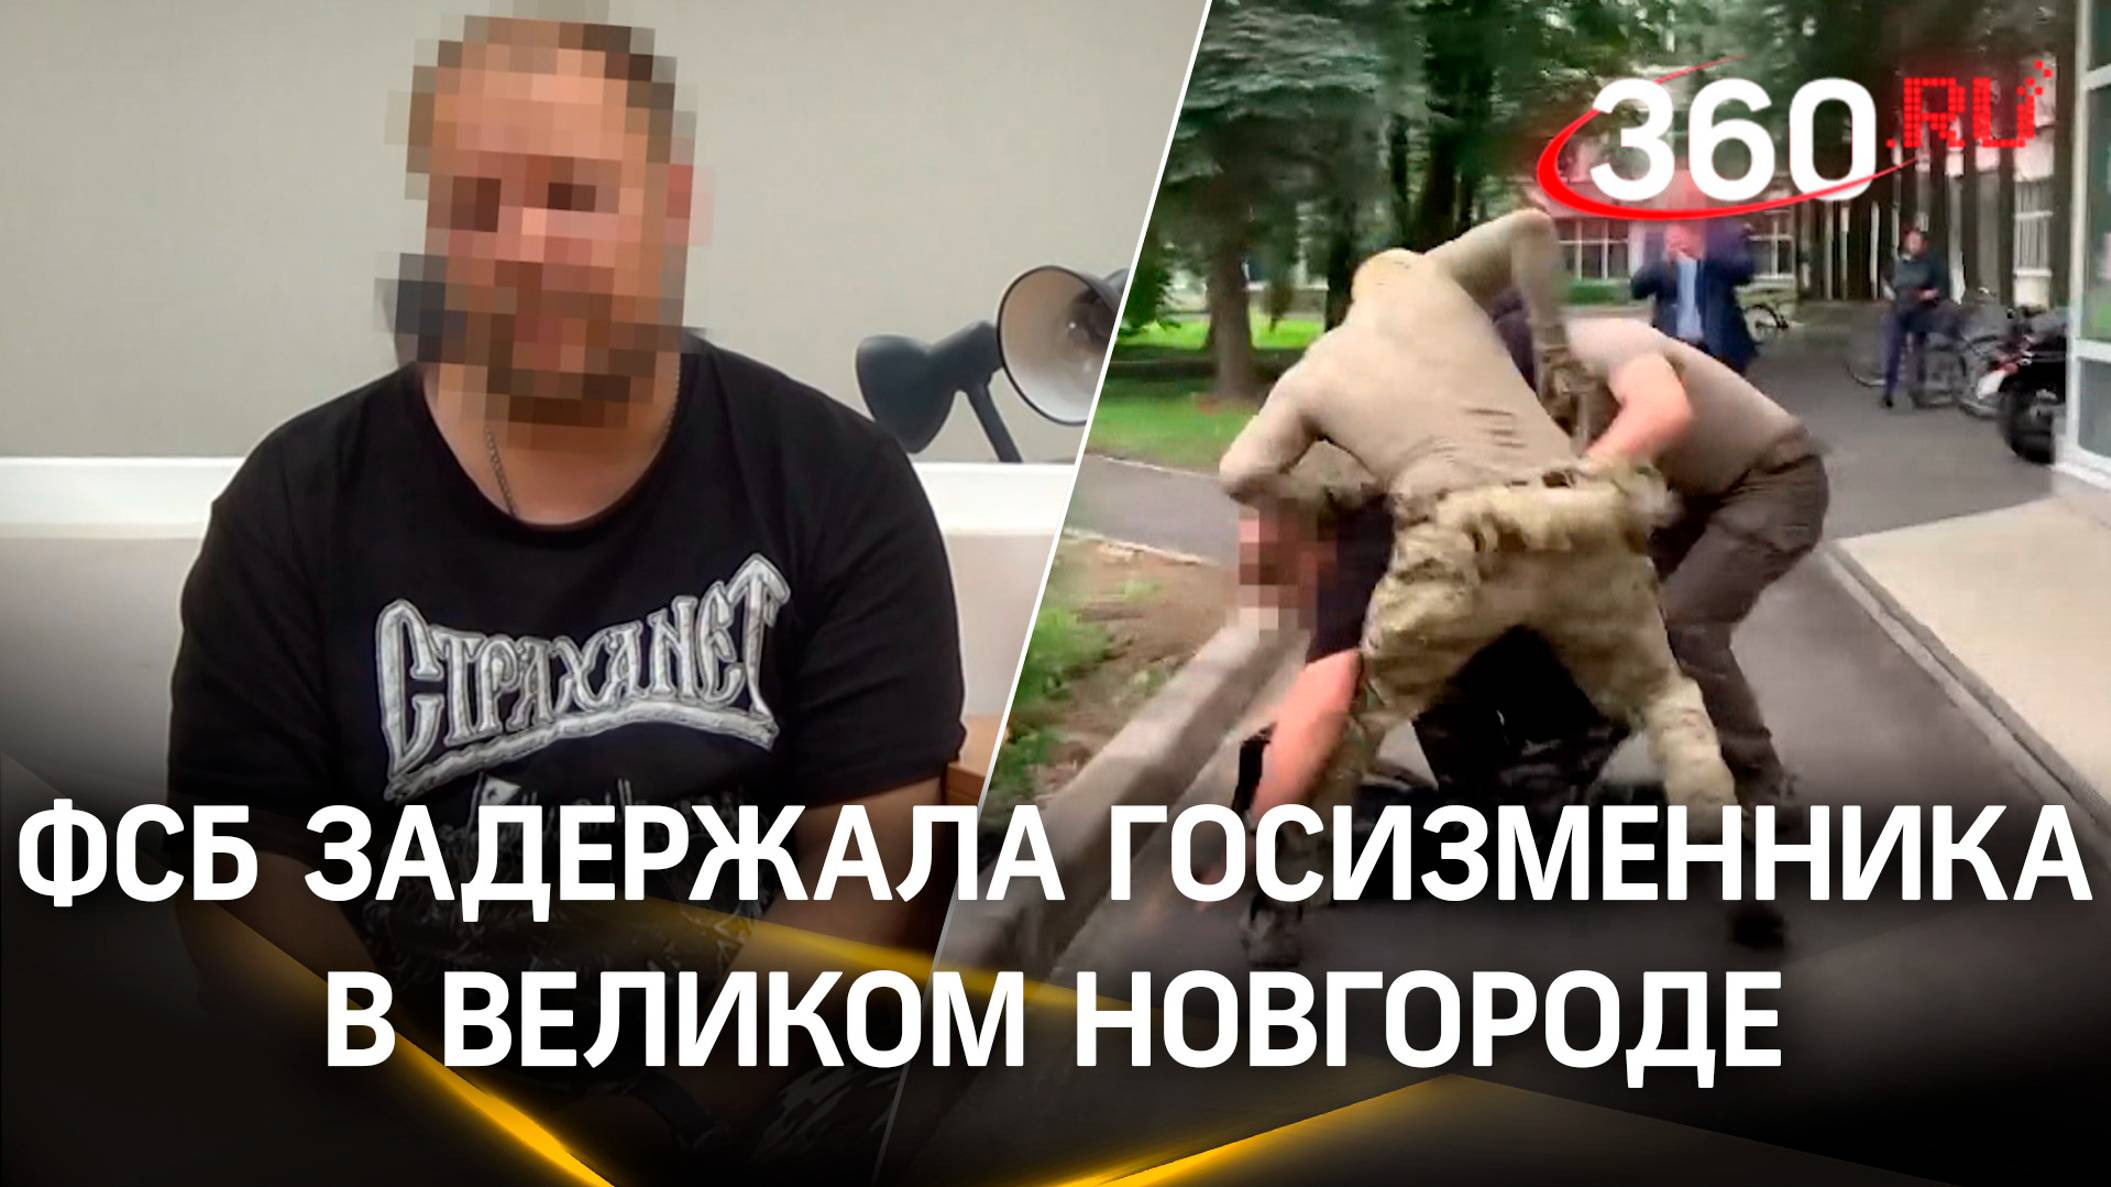 Киевский «крот» из Великого Новгорода - ФСБ задержала госизменника из оборонного завода